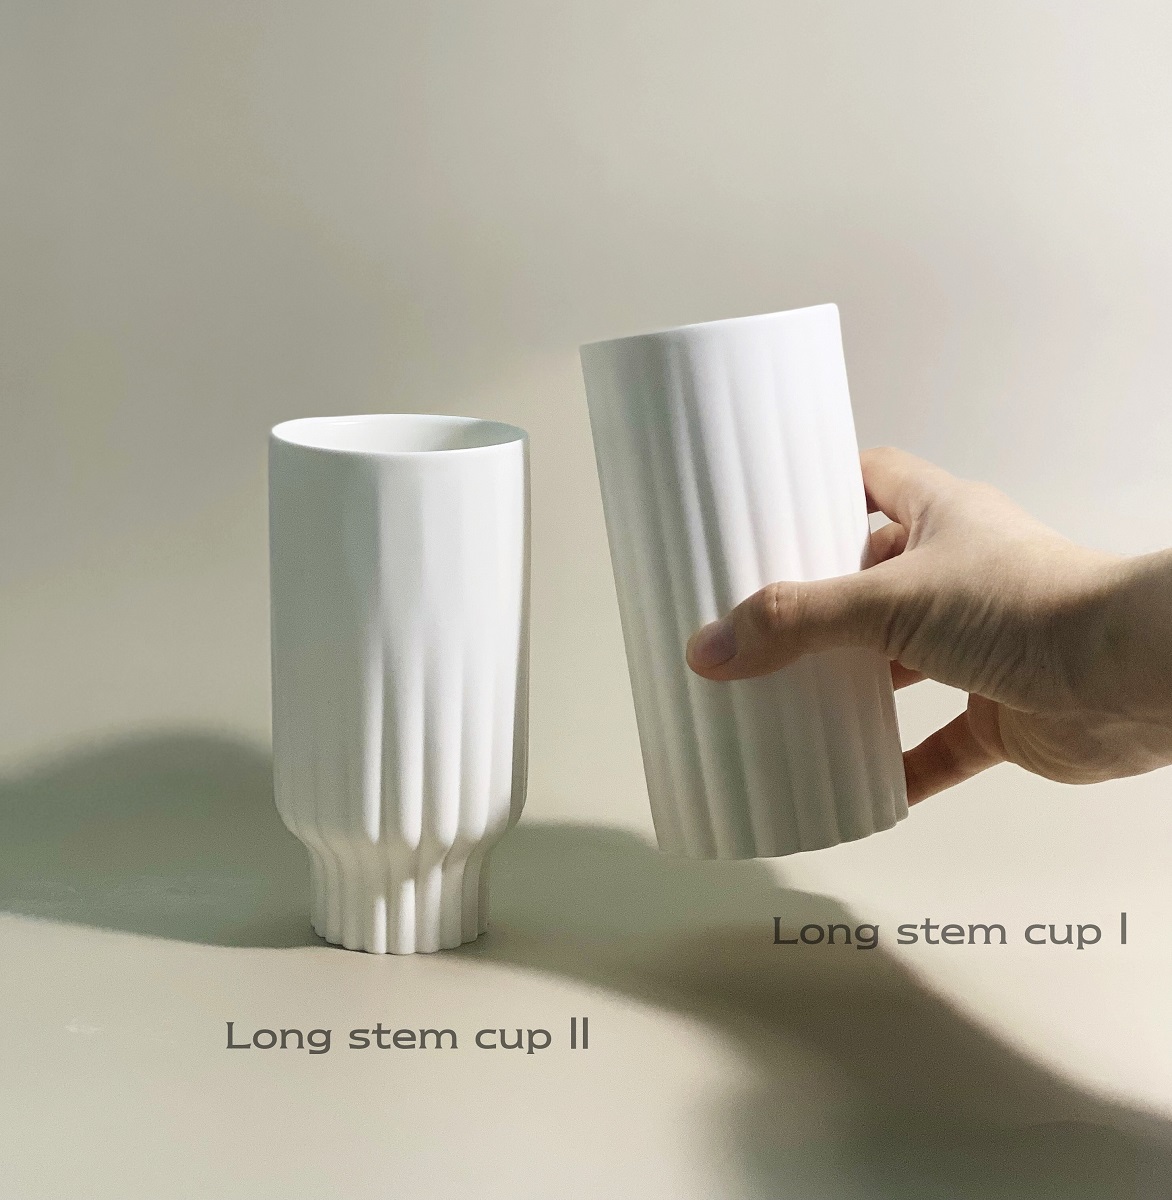 Long stem cup Ⅱ (롱 스템 컵 Ⅱ)